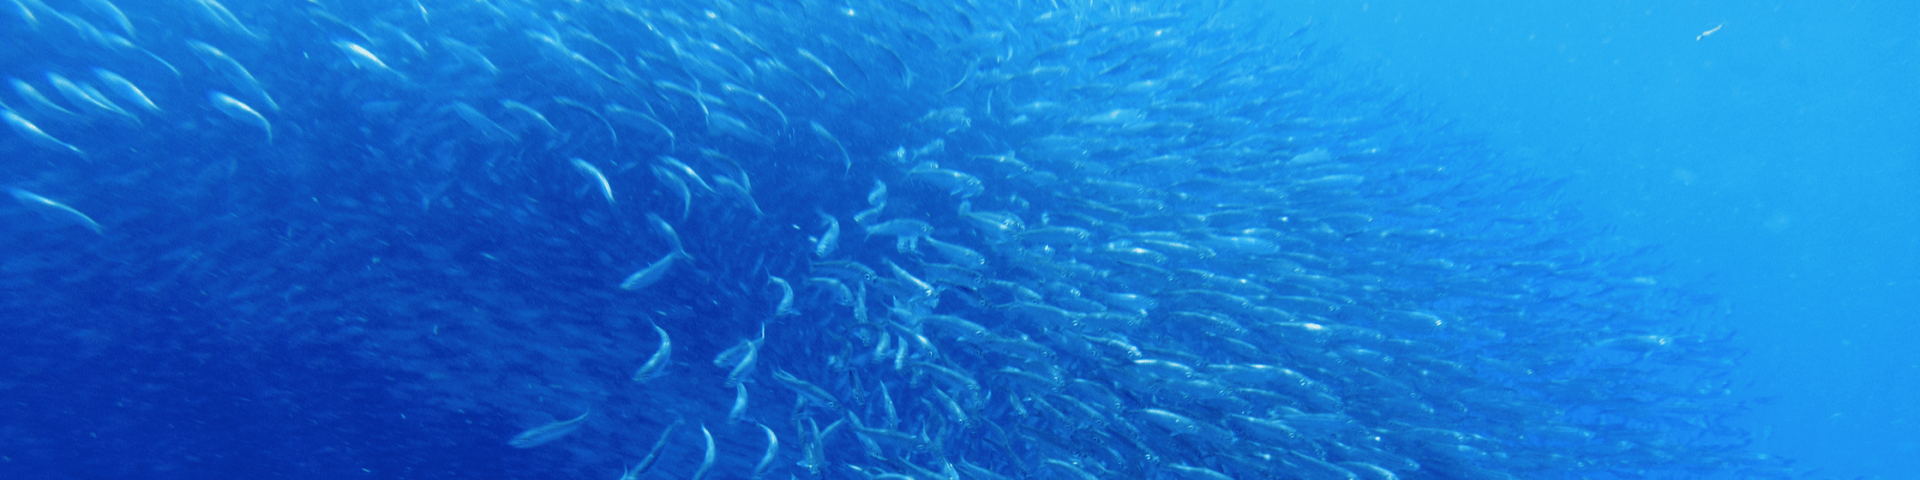 Fischschwarm als Metapher für systemische Selbstorganisation, lebendige und dynamische Kraft von Systemen, lebendigen Systemen, neue Perspektiven, Wahlmöglichkeiten, Mindful-bwl